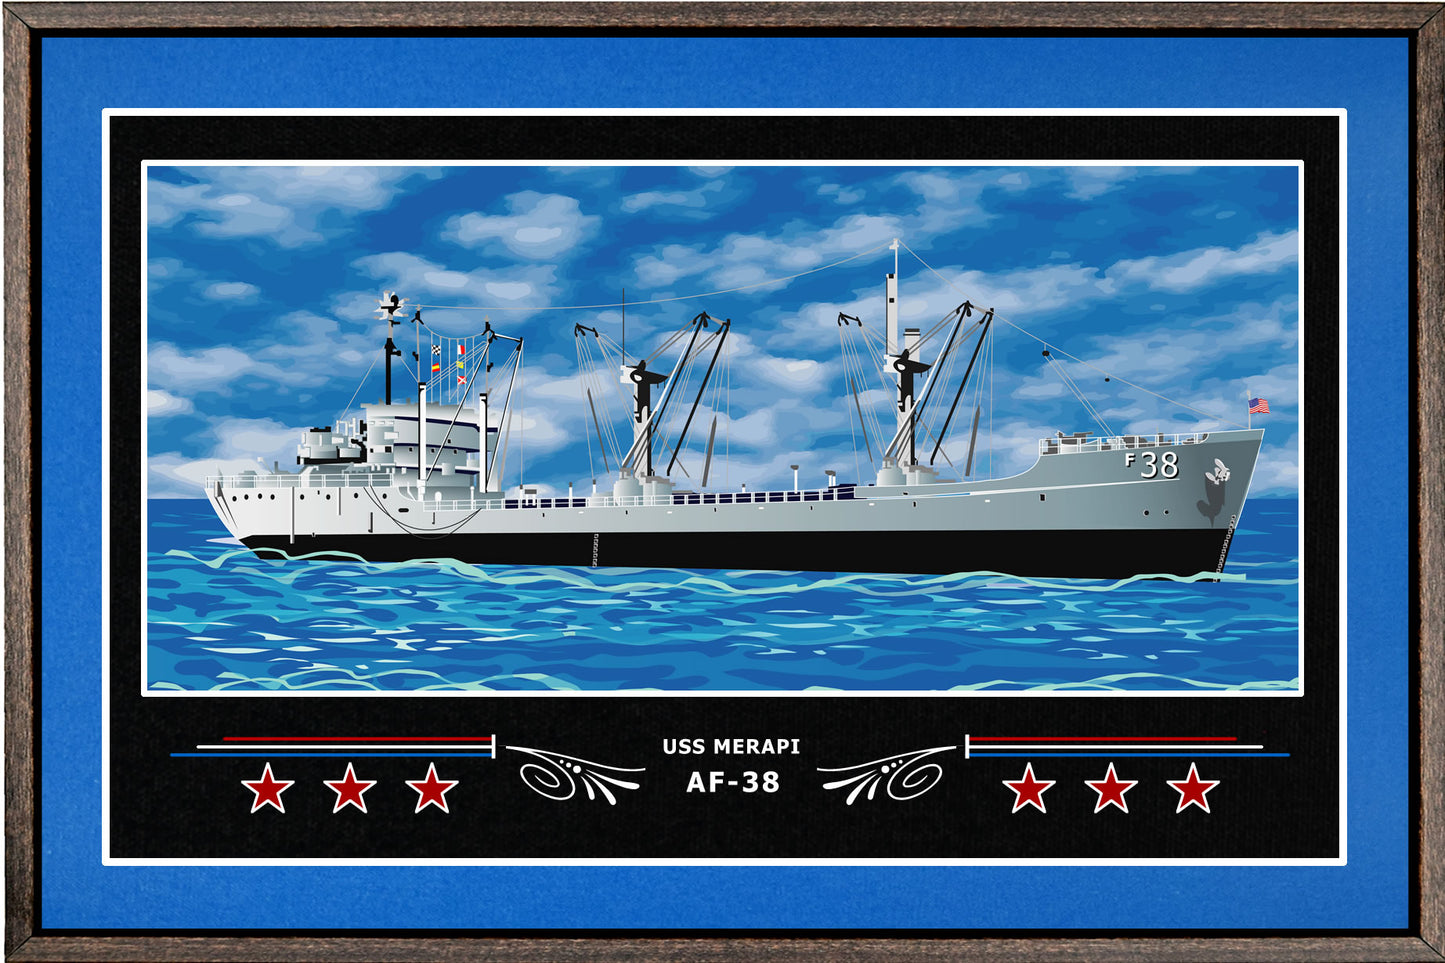 USS MERAPI AF 38 BOX FRAMED CANVAS ART BLUE